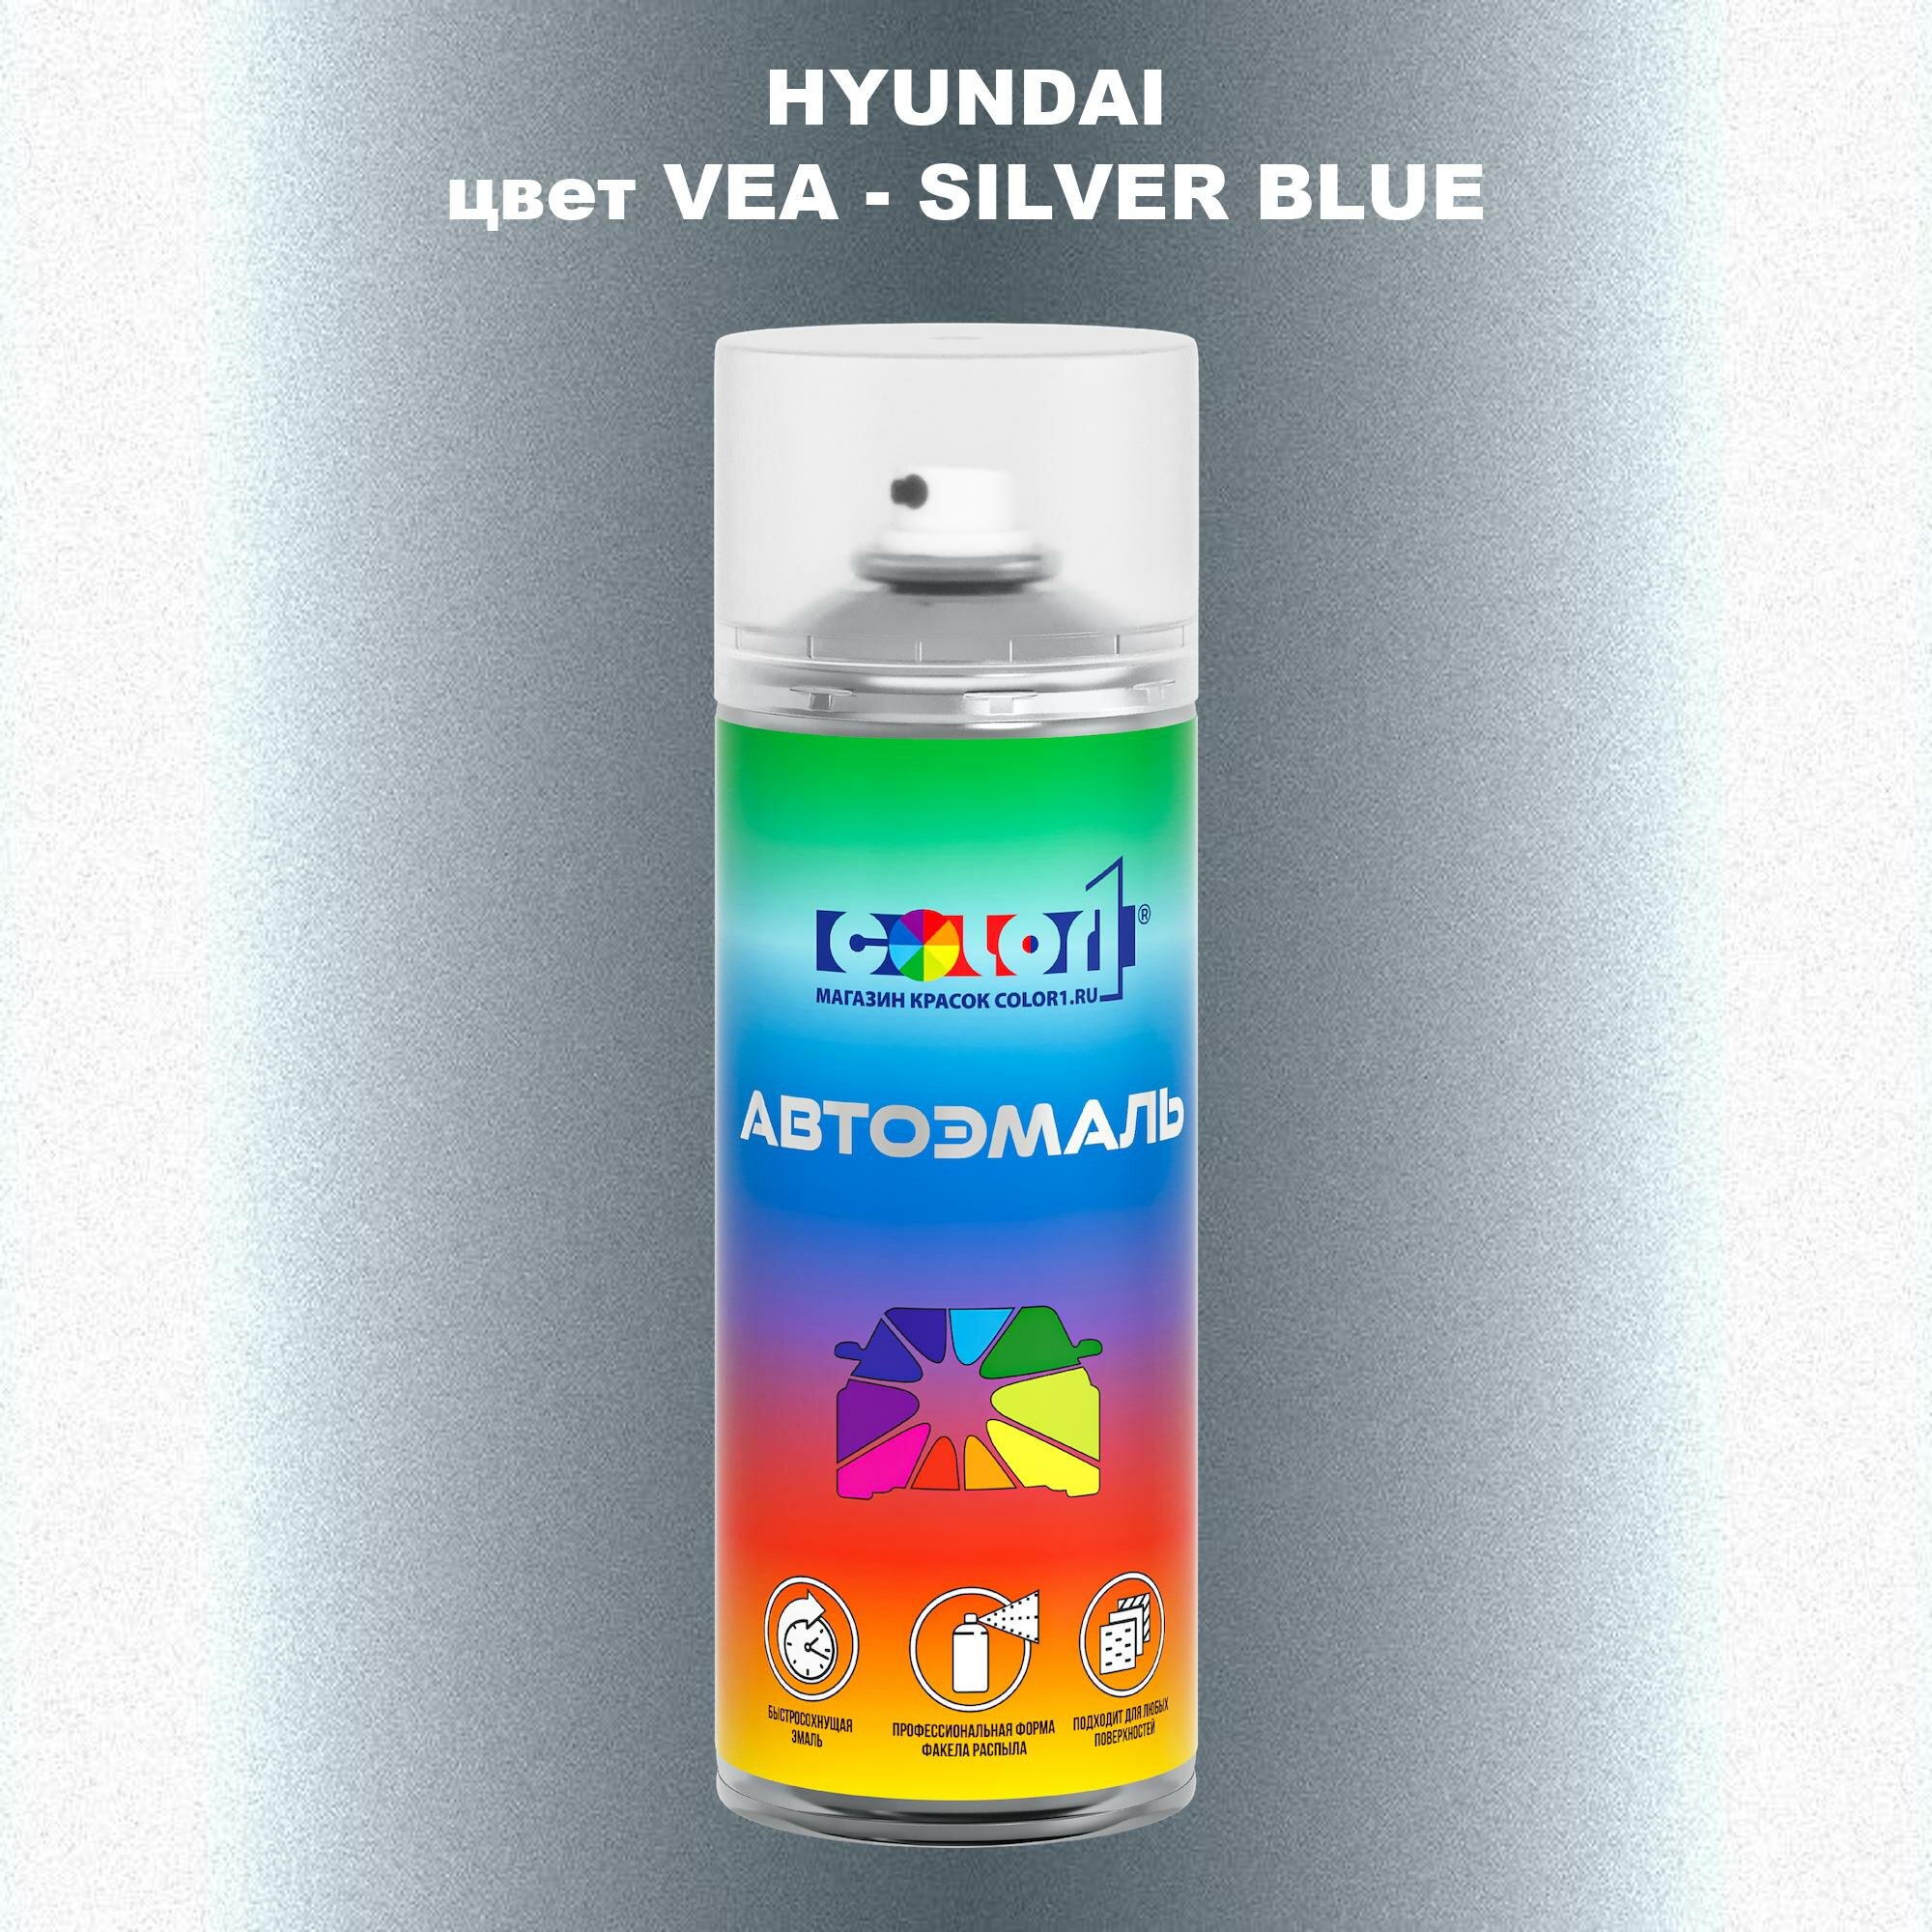 Аэрозольная краска COLOR1 для HYUNDAI, цвет VEA - SILVER BLUE